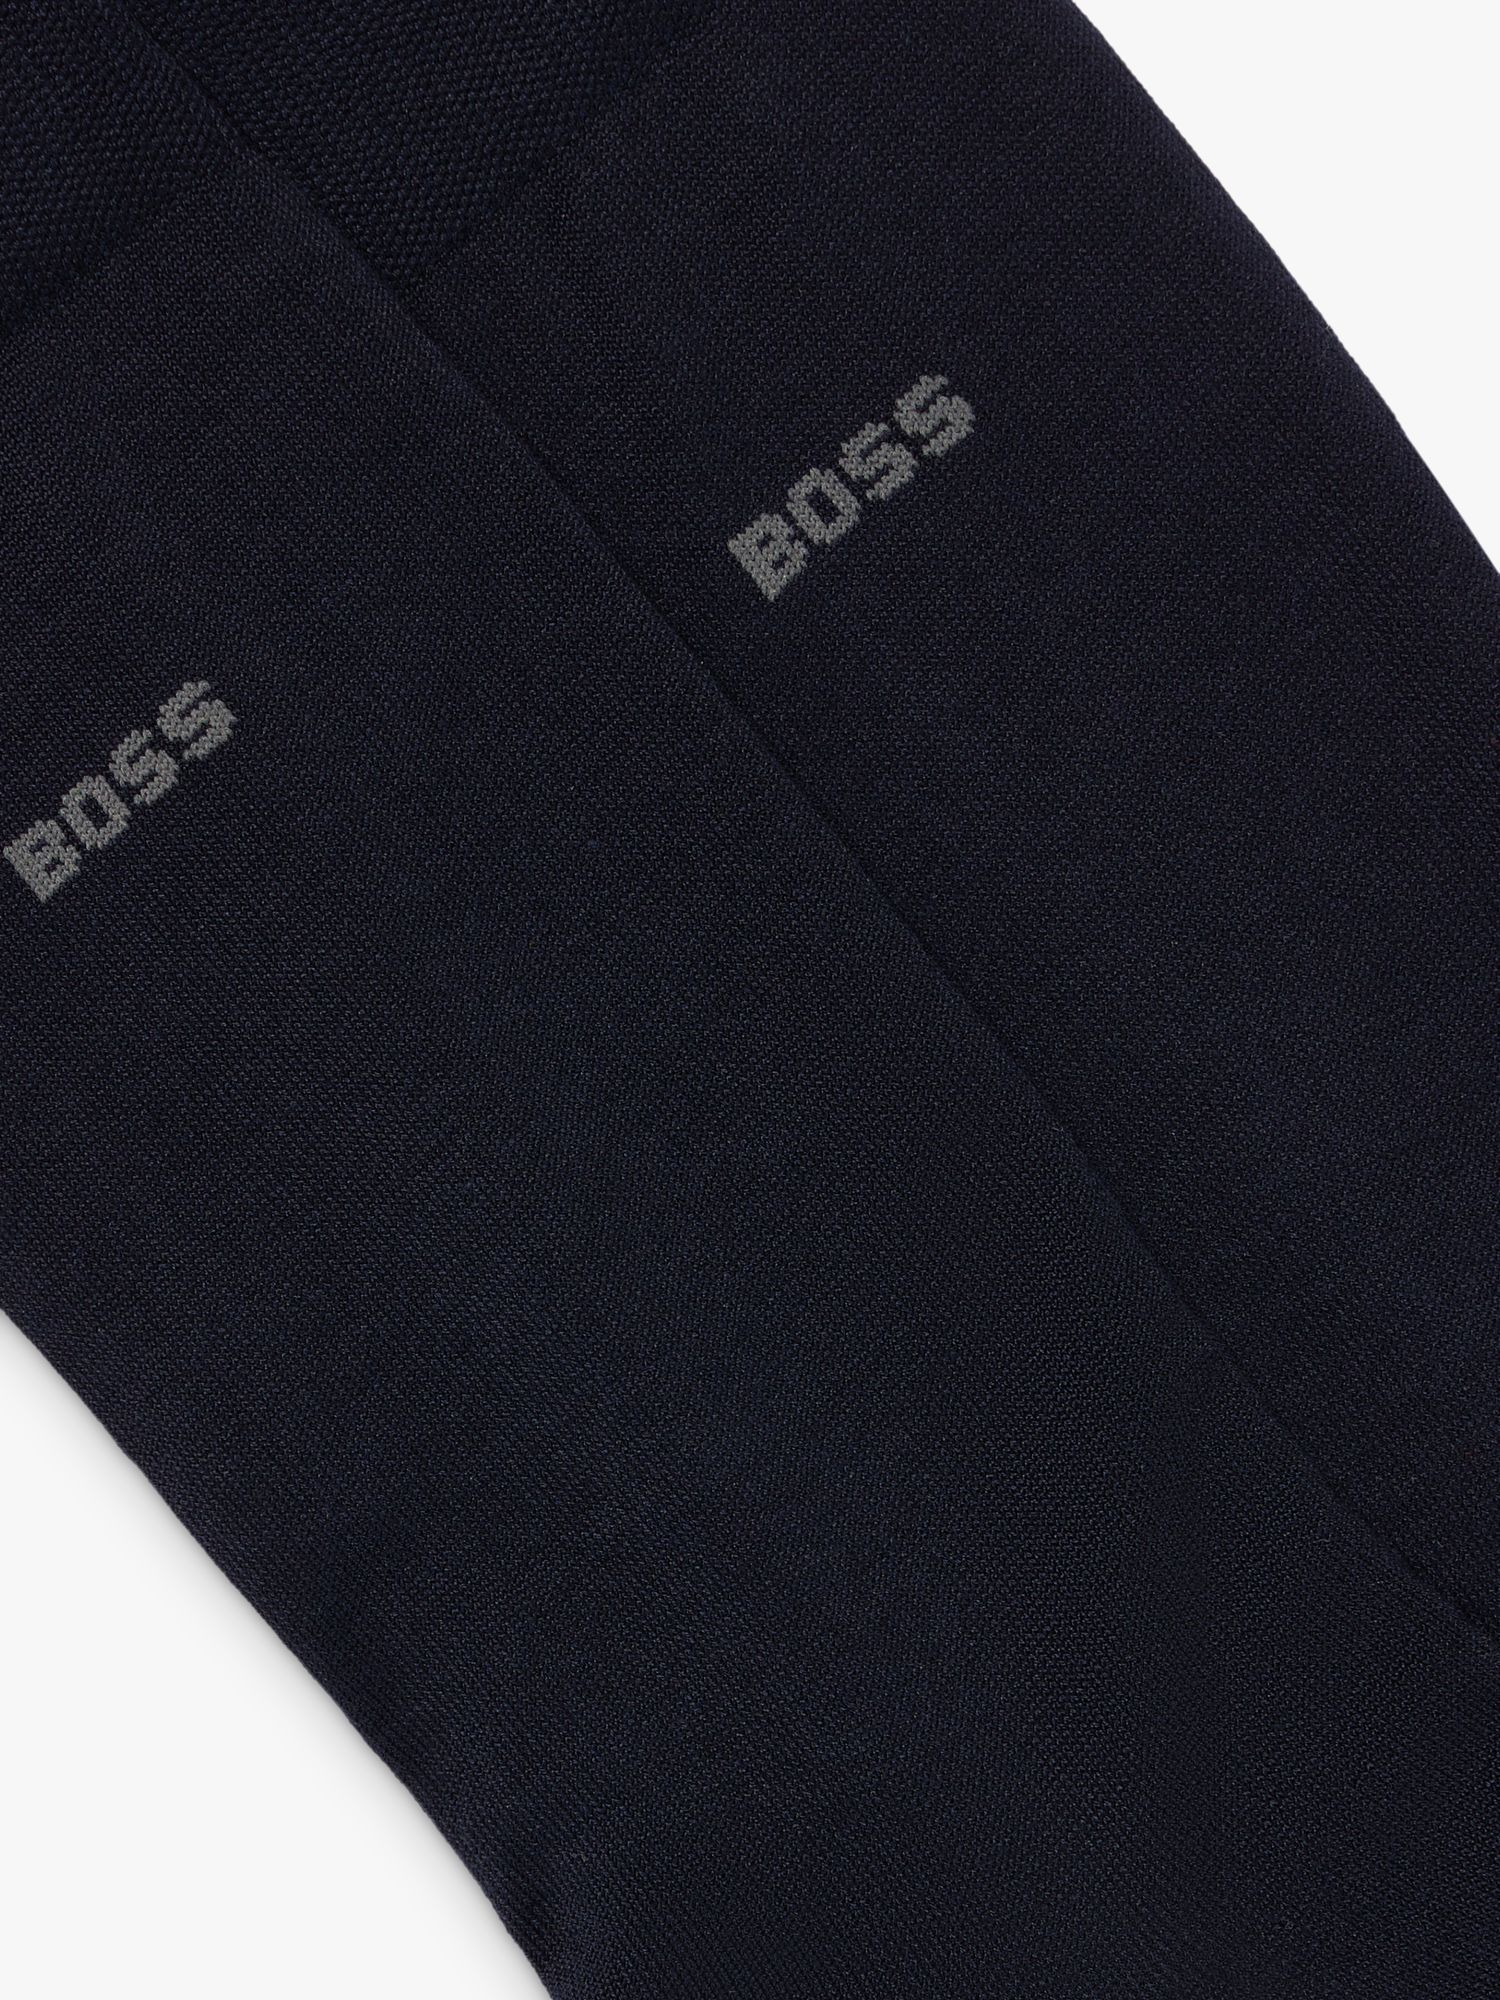 Buy BOSS Tom Logo Socks, Pack of 2 Online at johnlewis.com